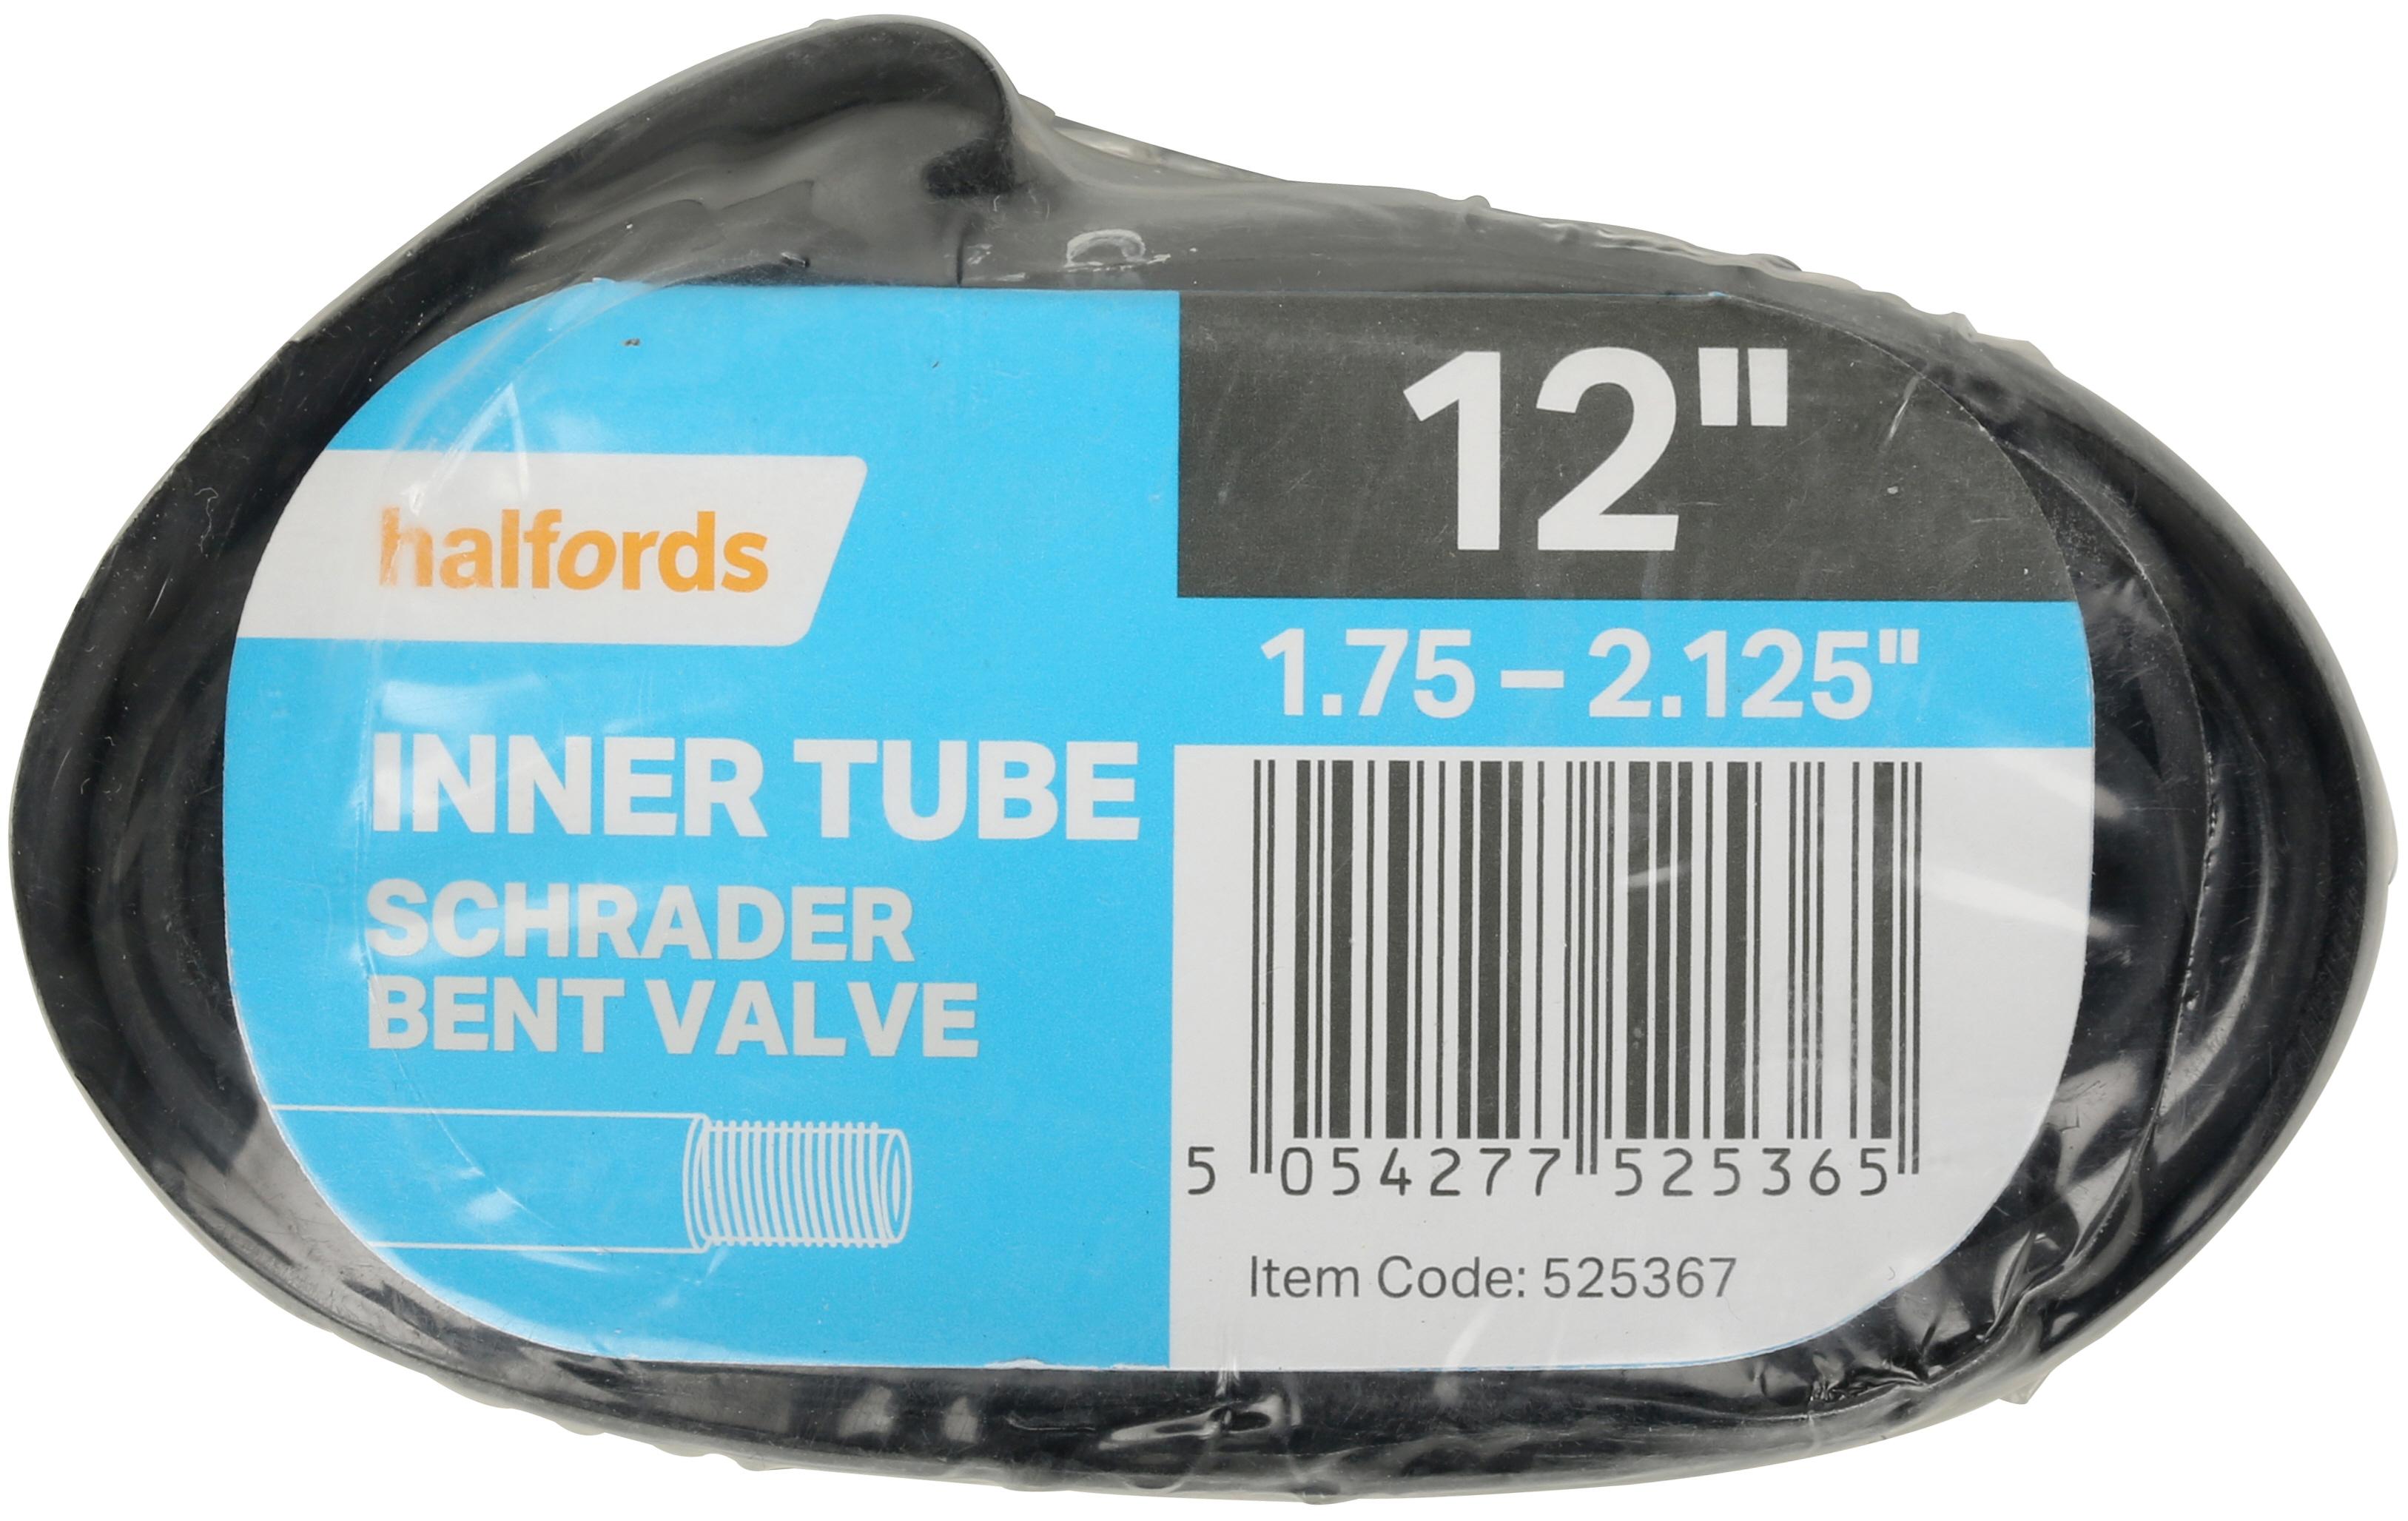 Halfords Schrader Inner Tube, 12 Inch X 1.75 - 2.125 Inch, Bent Valve